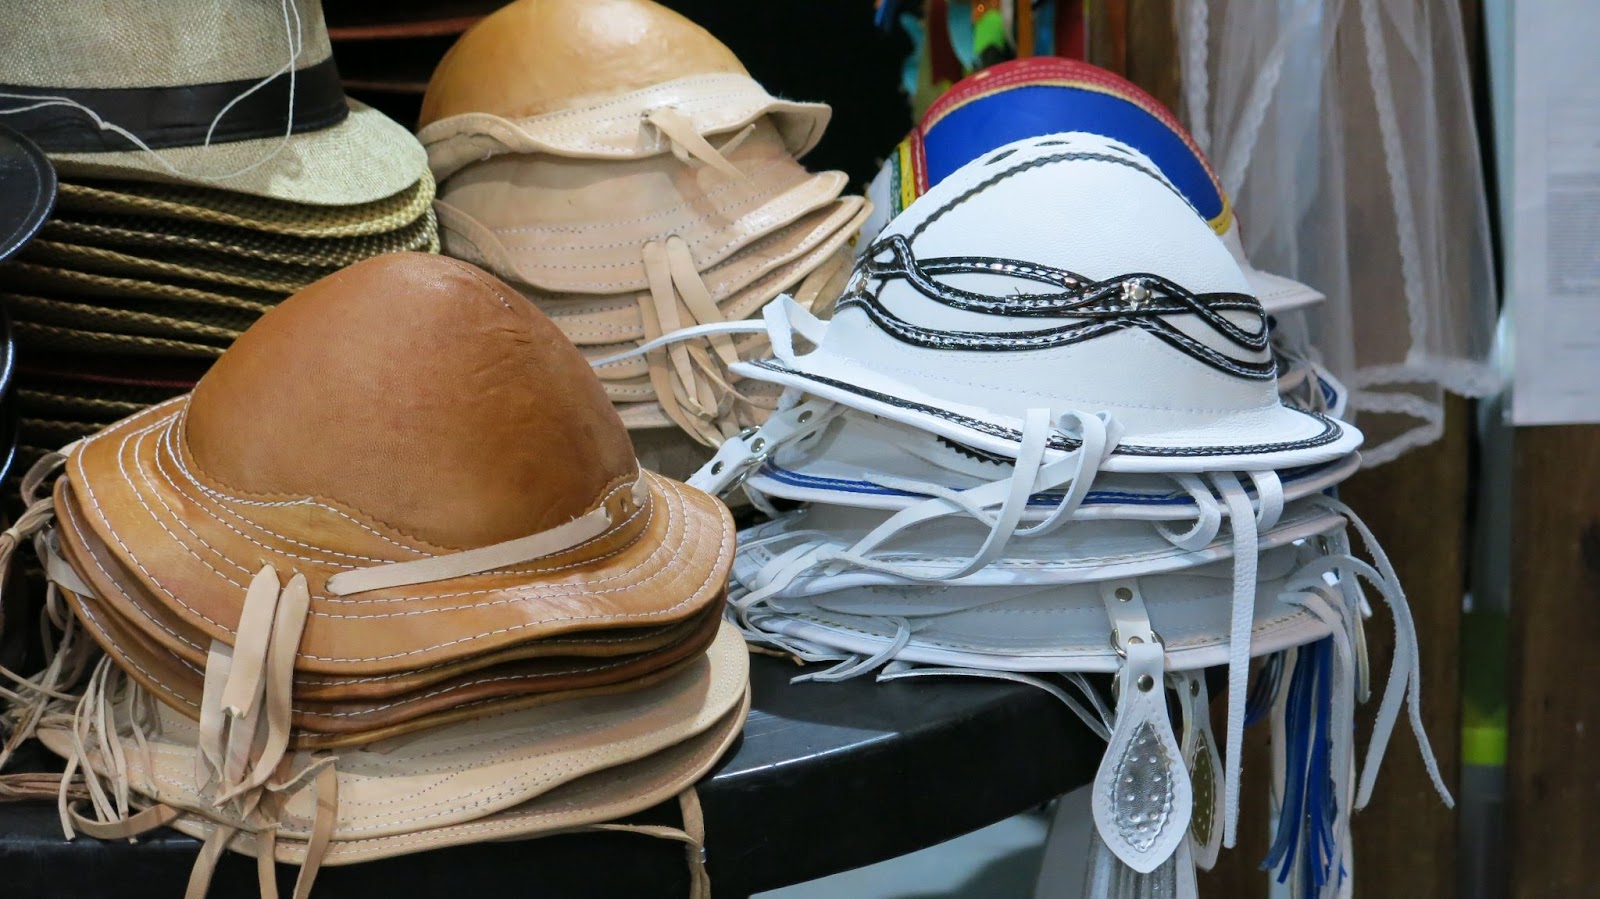 Chapéus de couro, indumentárias tradicionalmente usadas pelos trabalhadores rurais do interior de Pernambuco. Os vários modelos de chapéus estão empilhados sobre o balcão de uma loja.